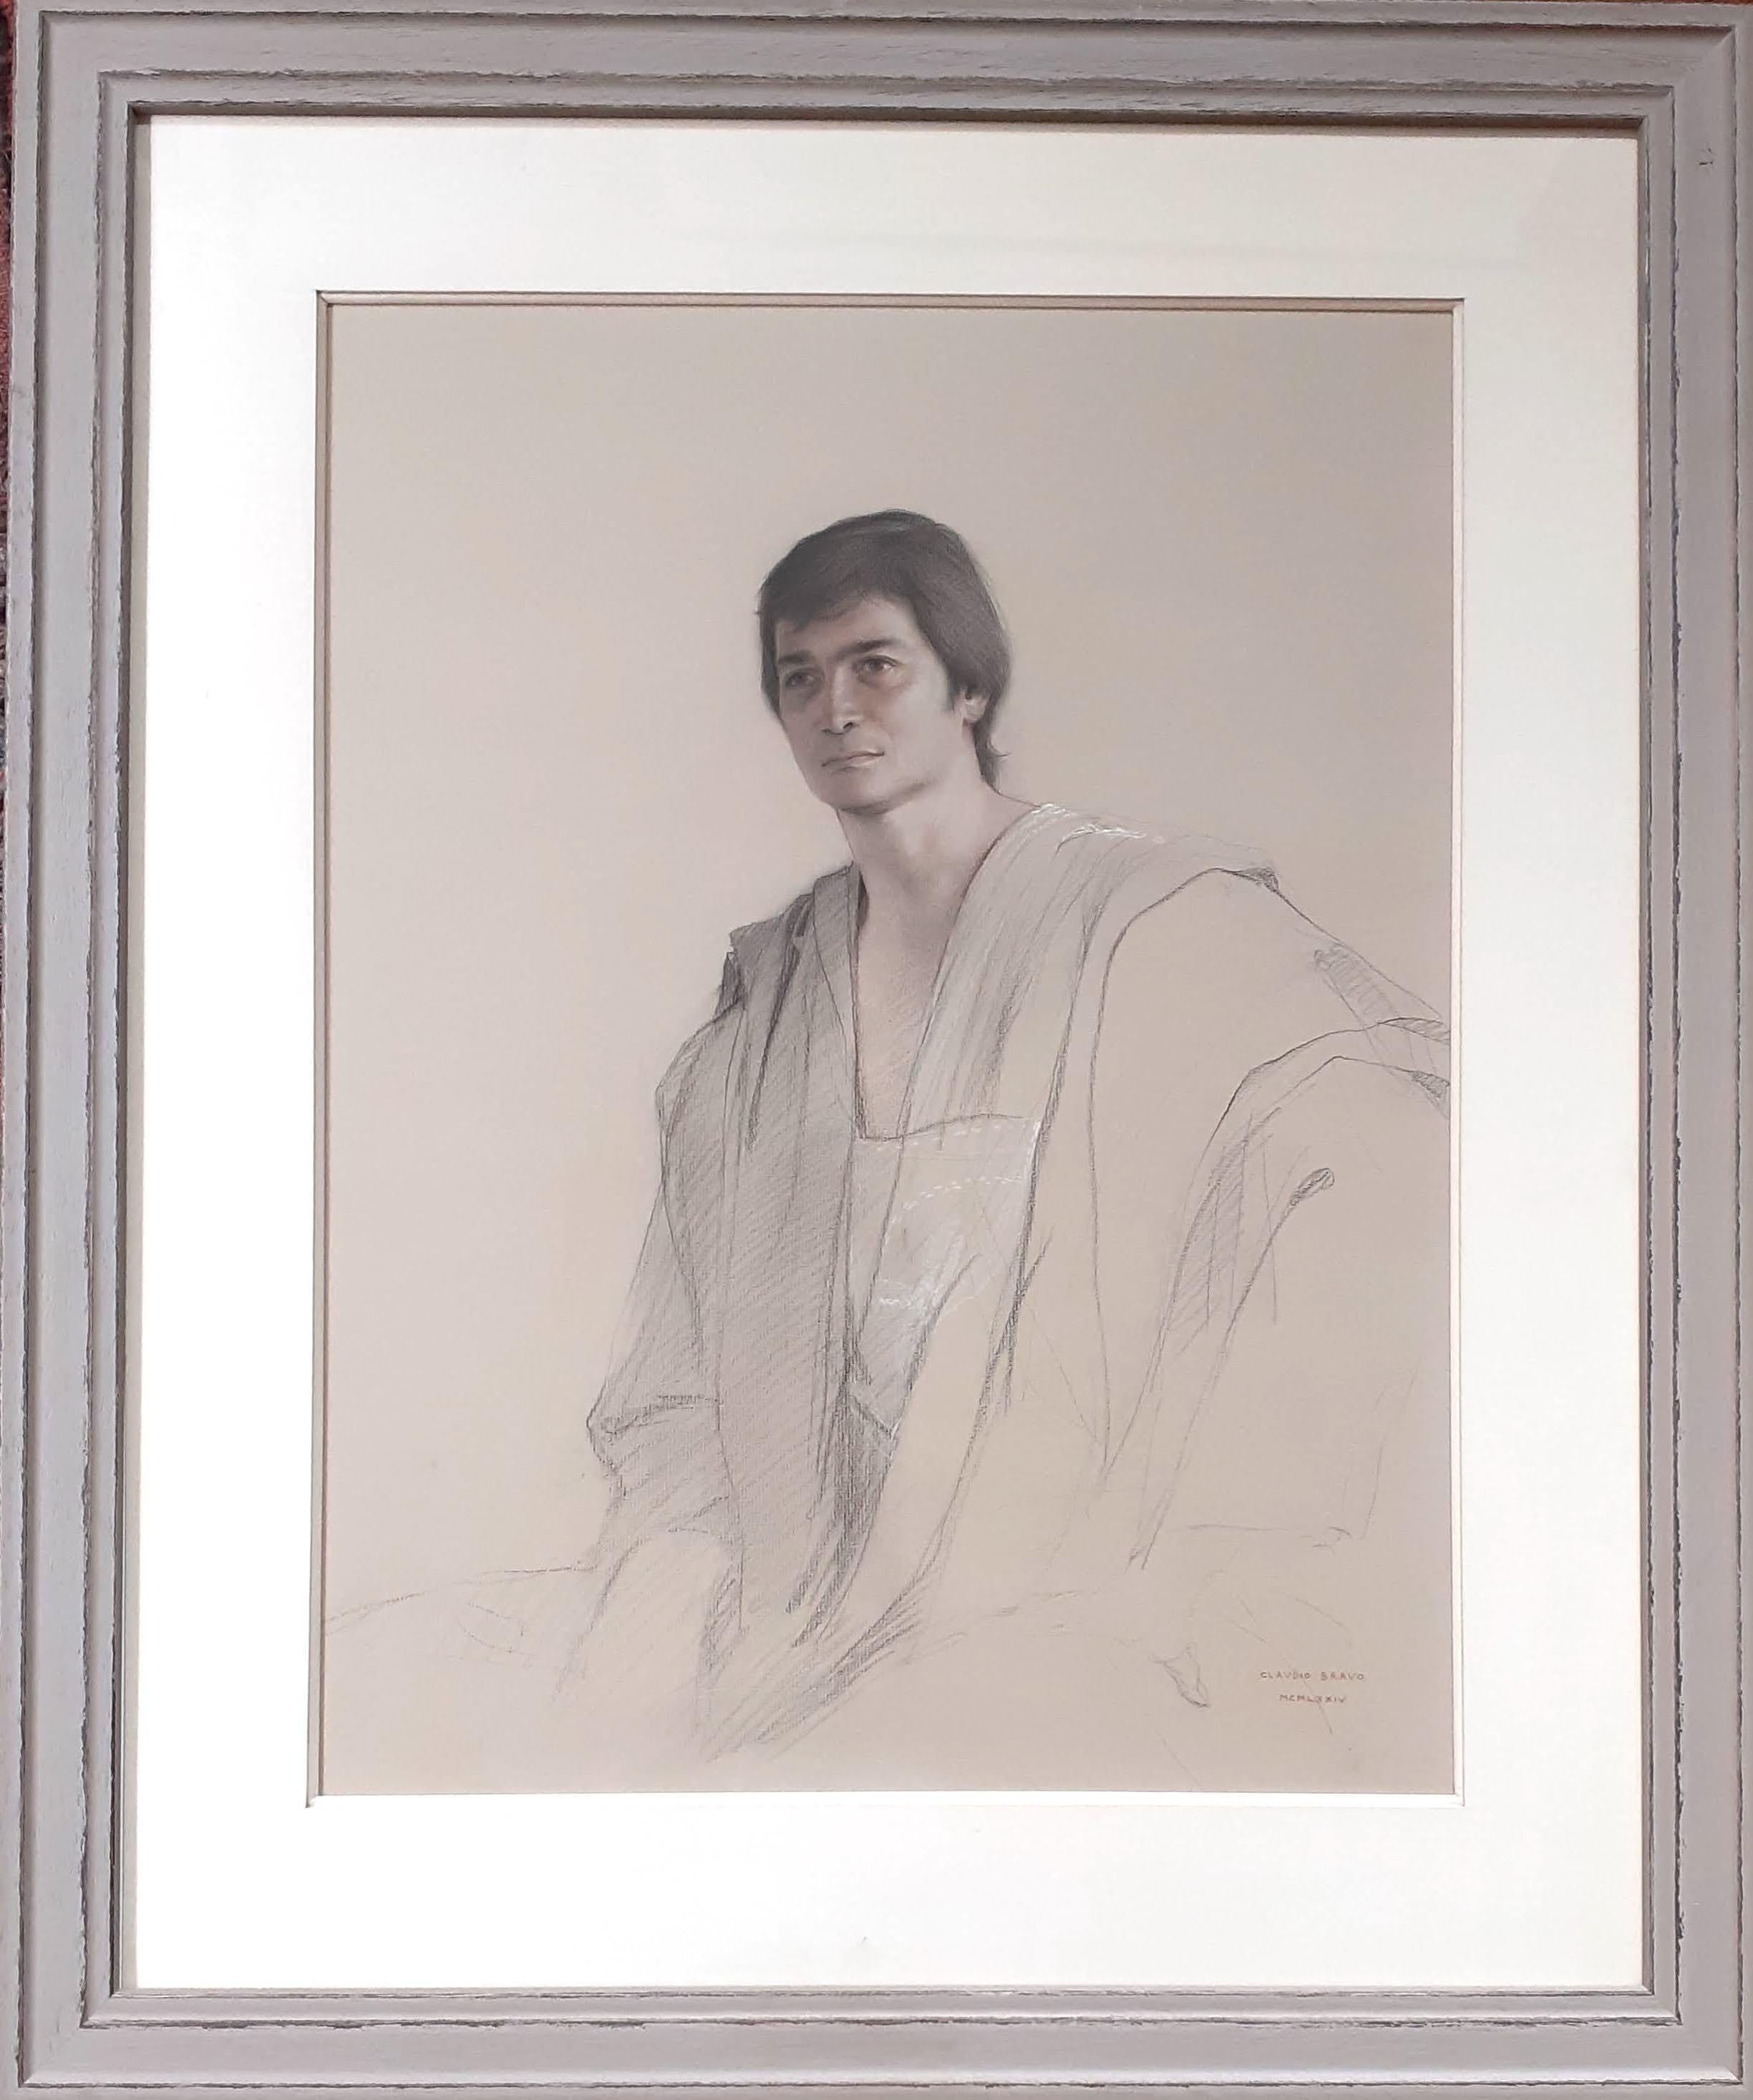 Ein junger Mann in einem  toga eleganter Mann Lateinamerikanischer hyperrealistischer Hockney-Stil